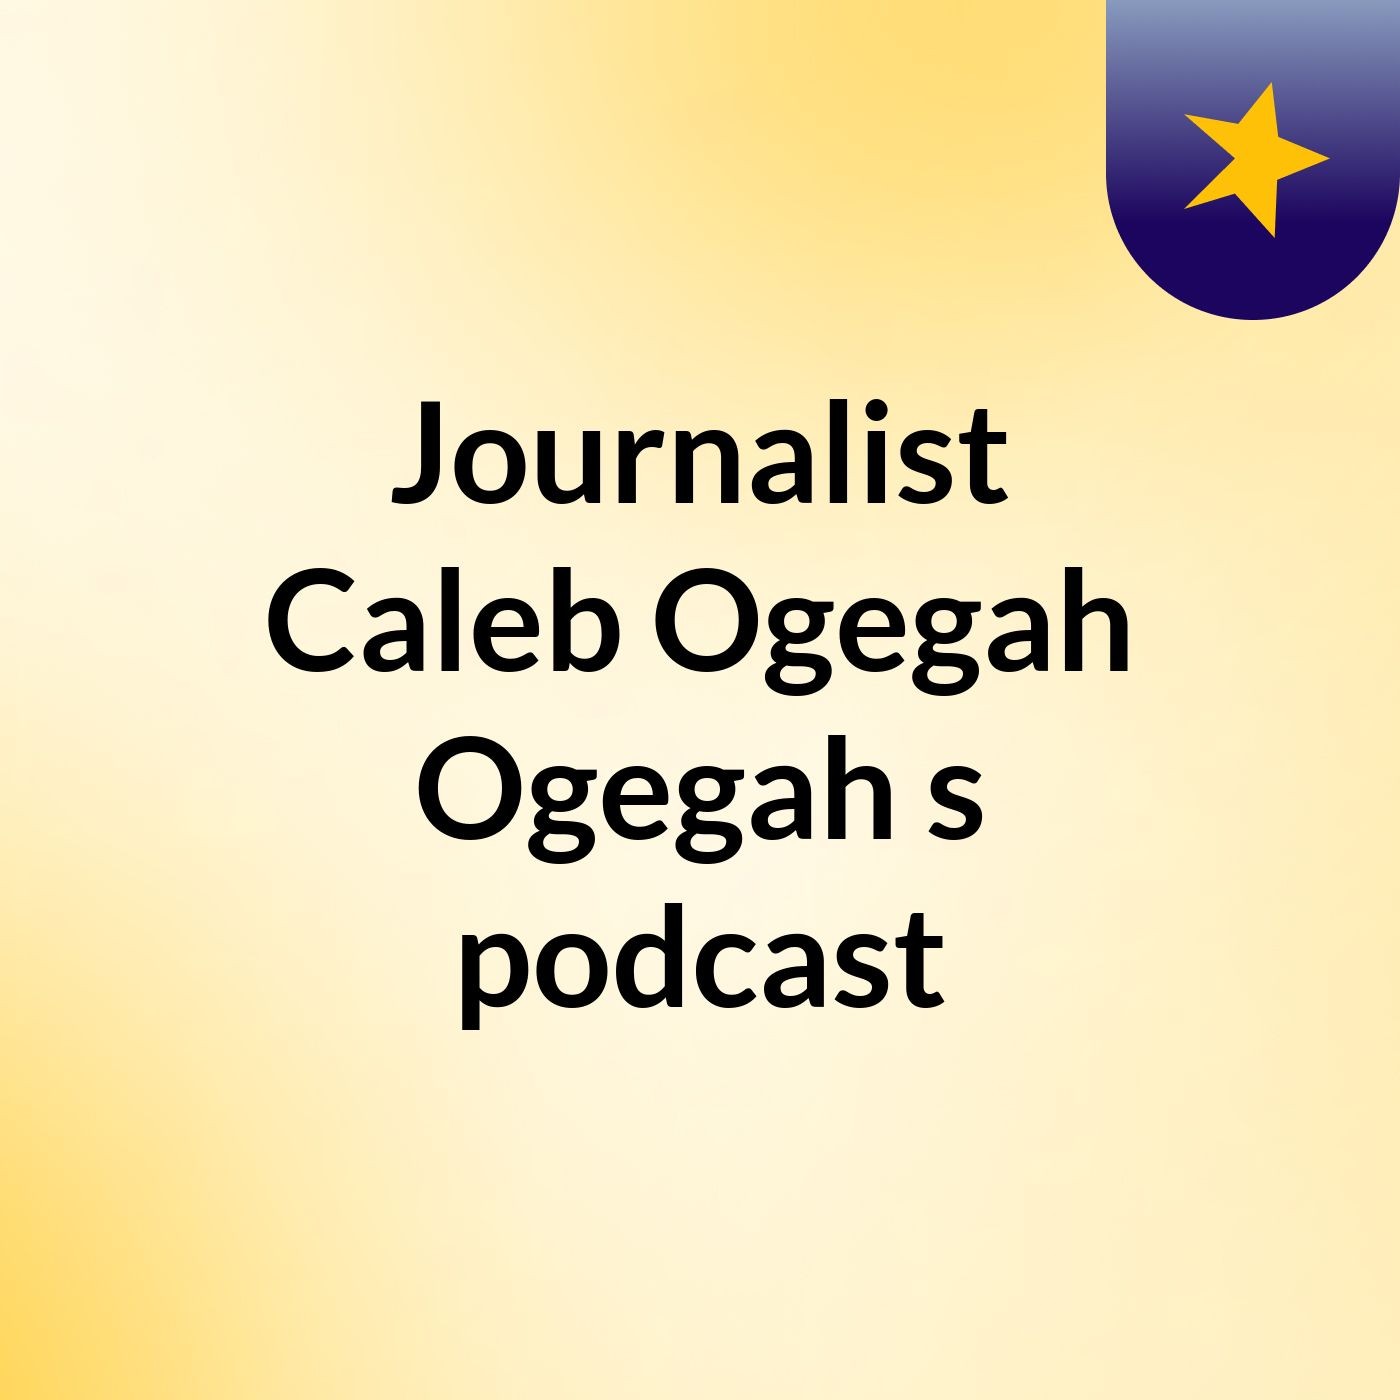 Journalist Caleb Ogegah Ogegah's podcast